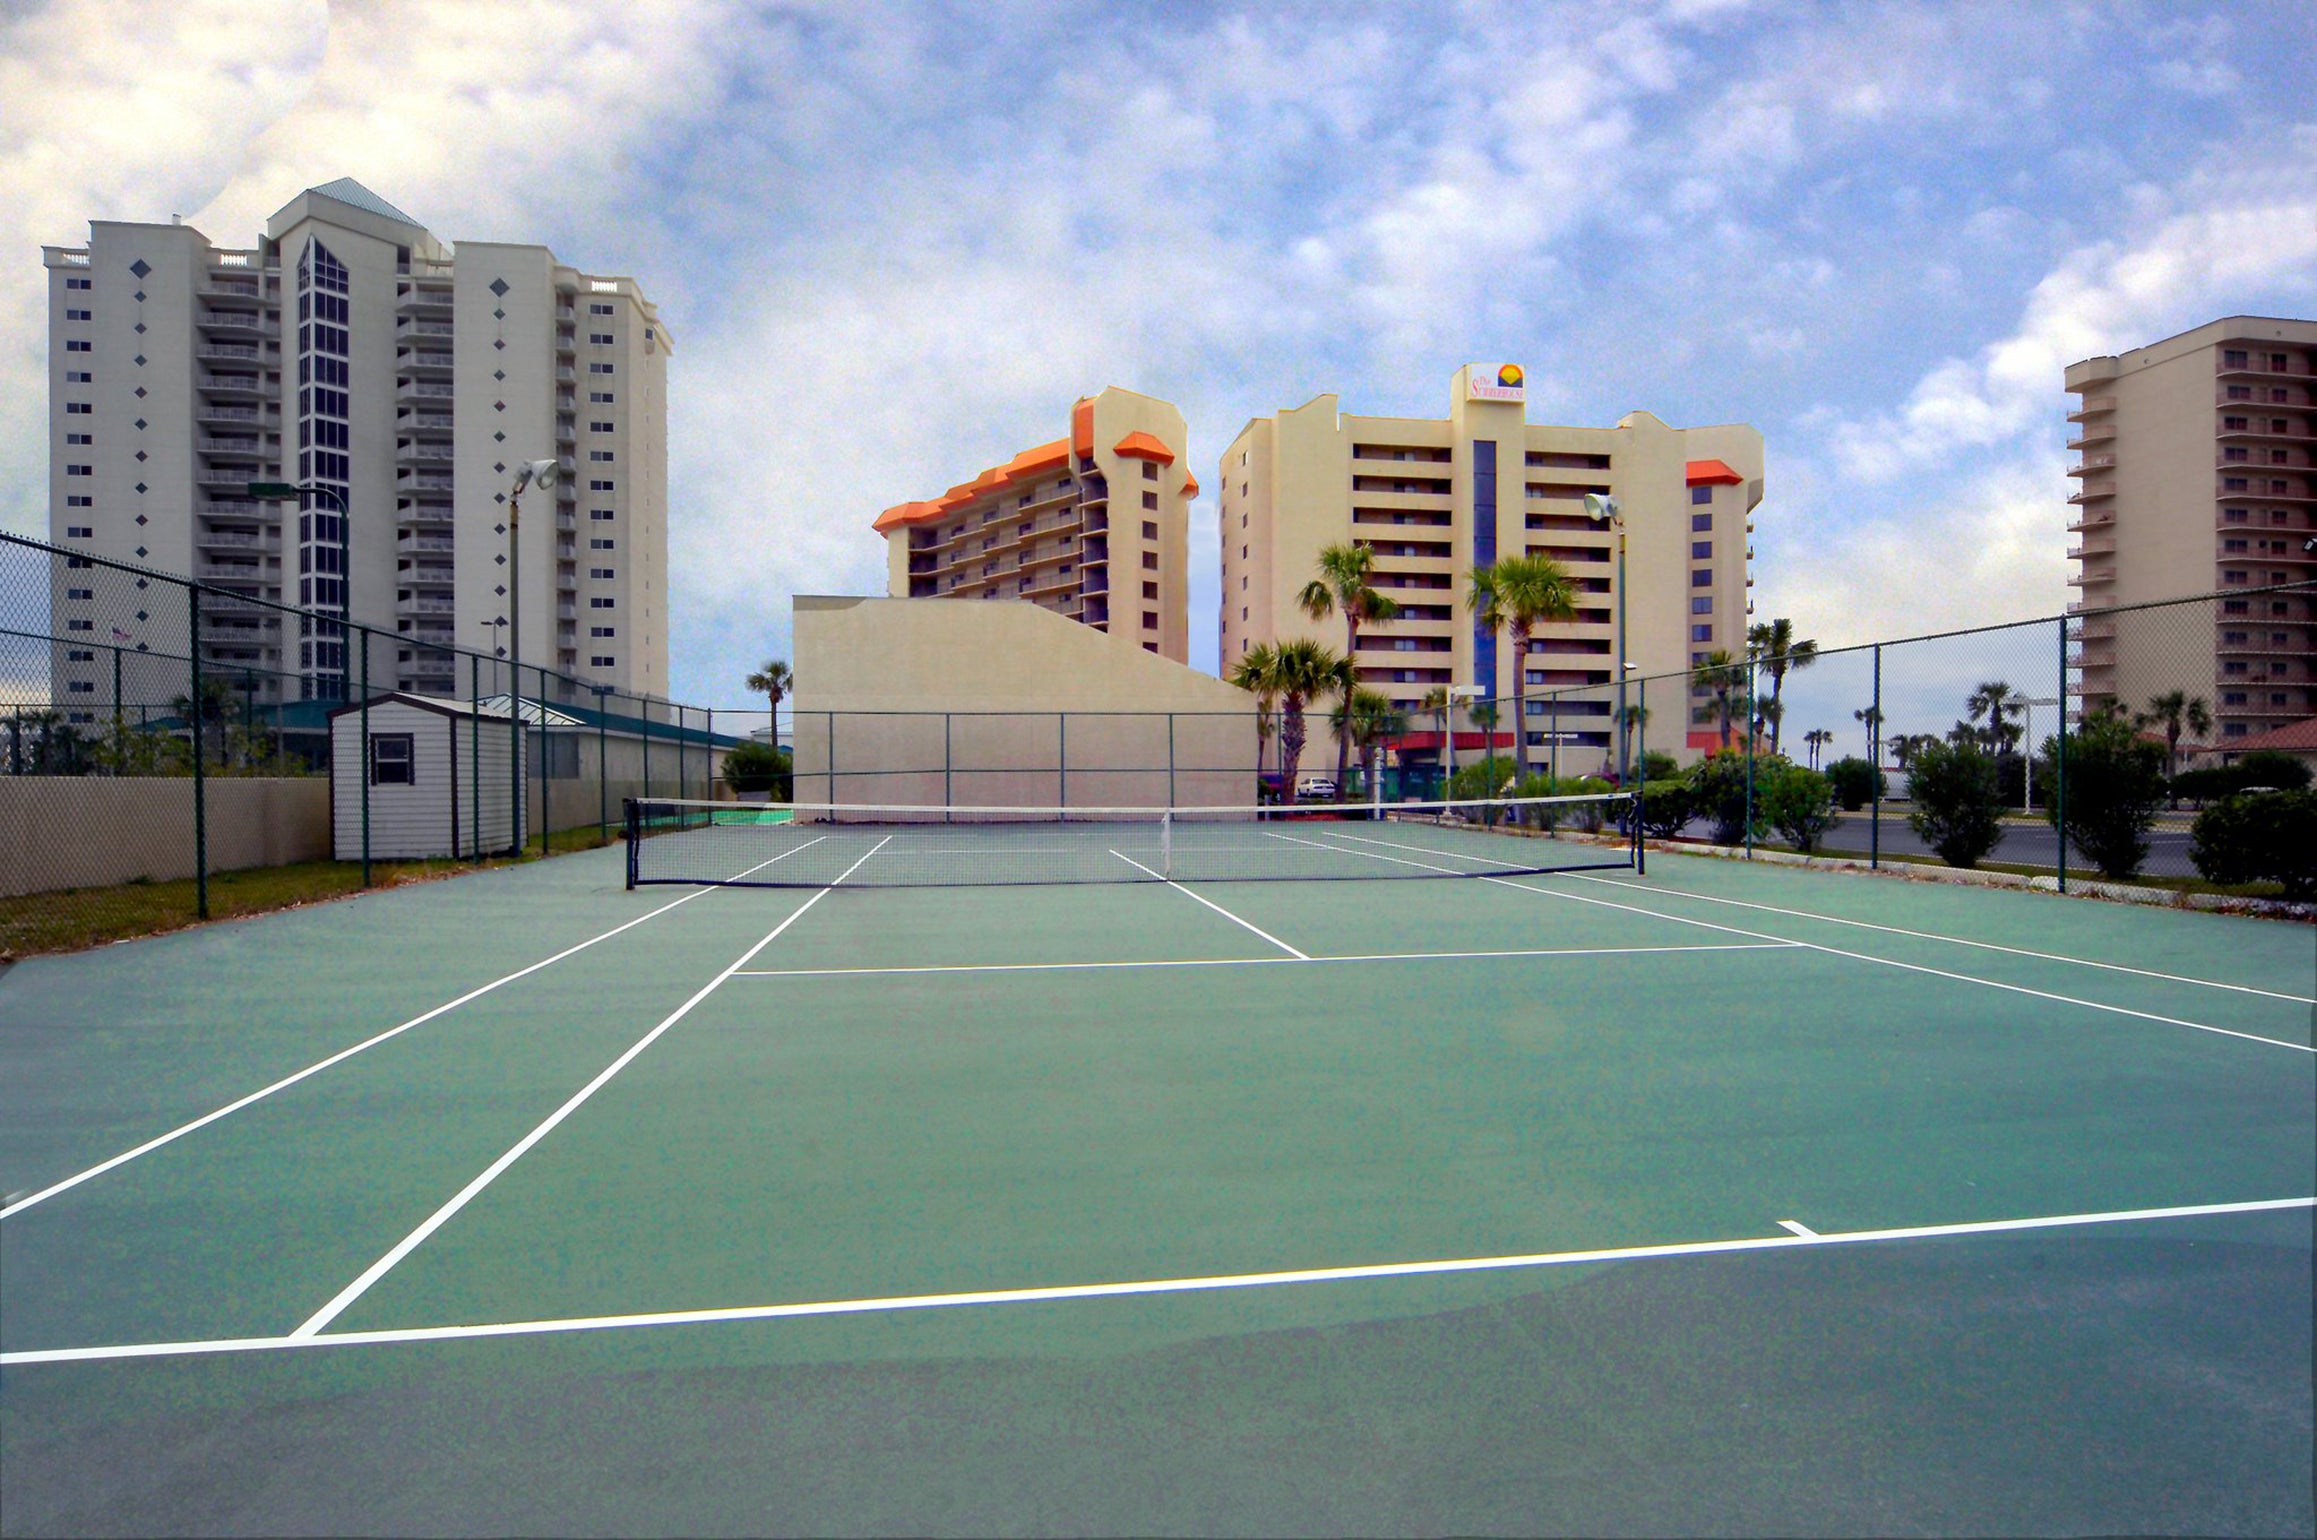 Summerhouse Tennis courts